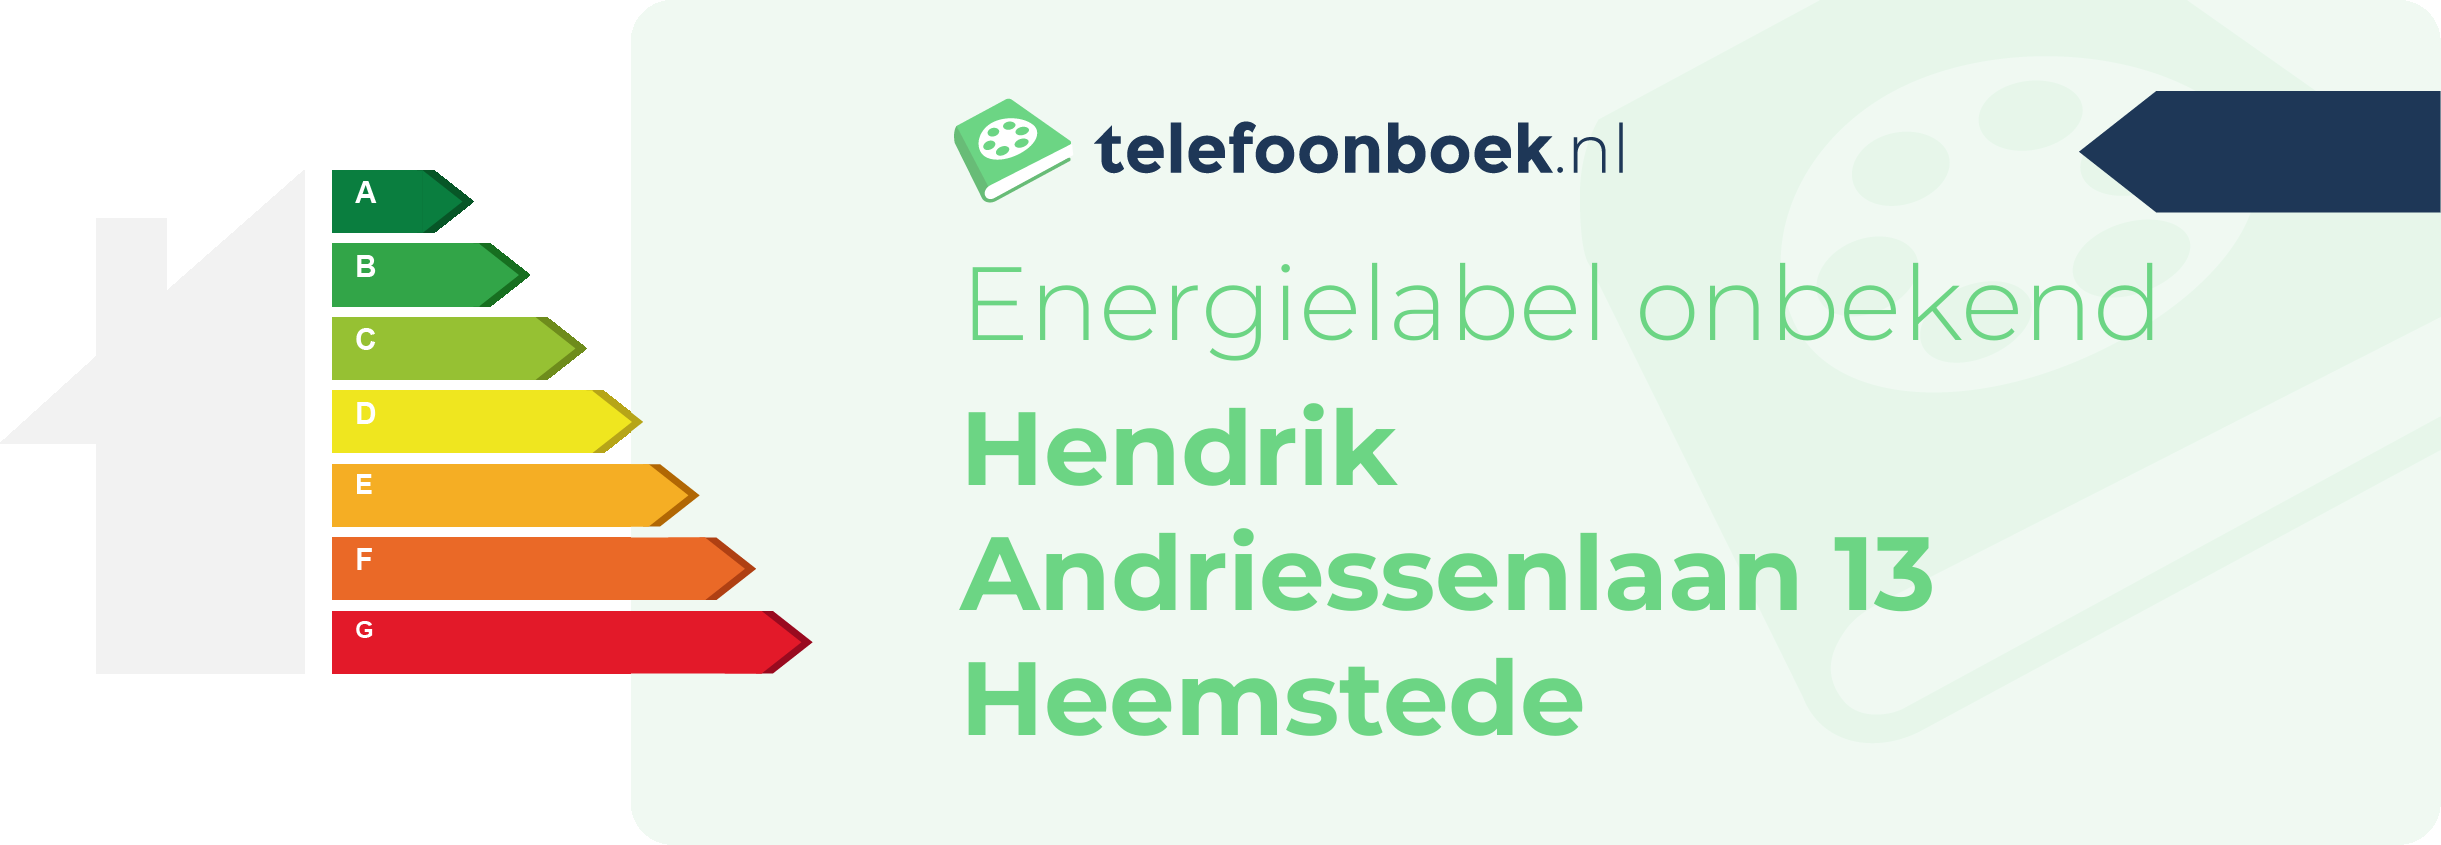 Energielabel Hendrik Andriessenlaan 13 Heemstede